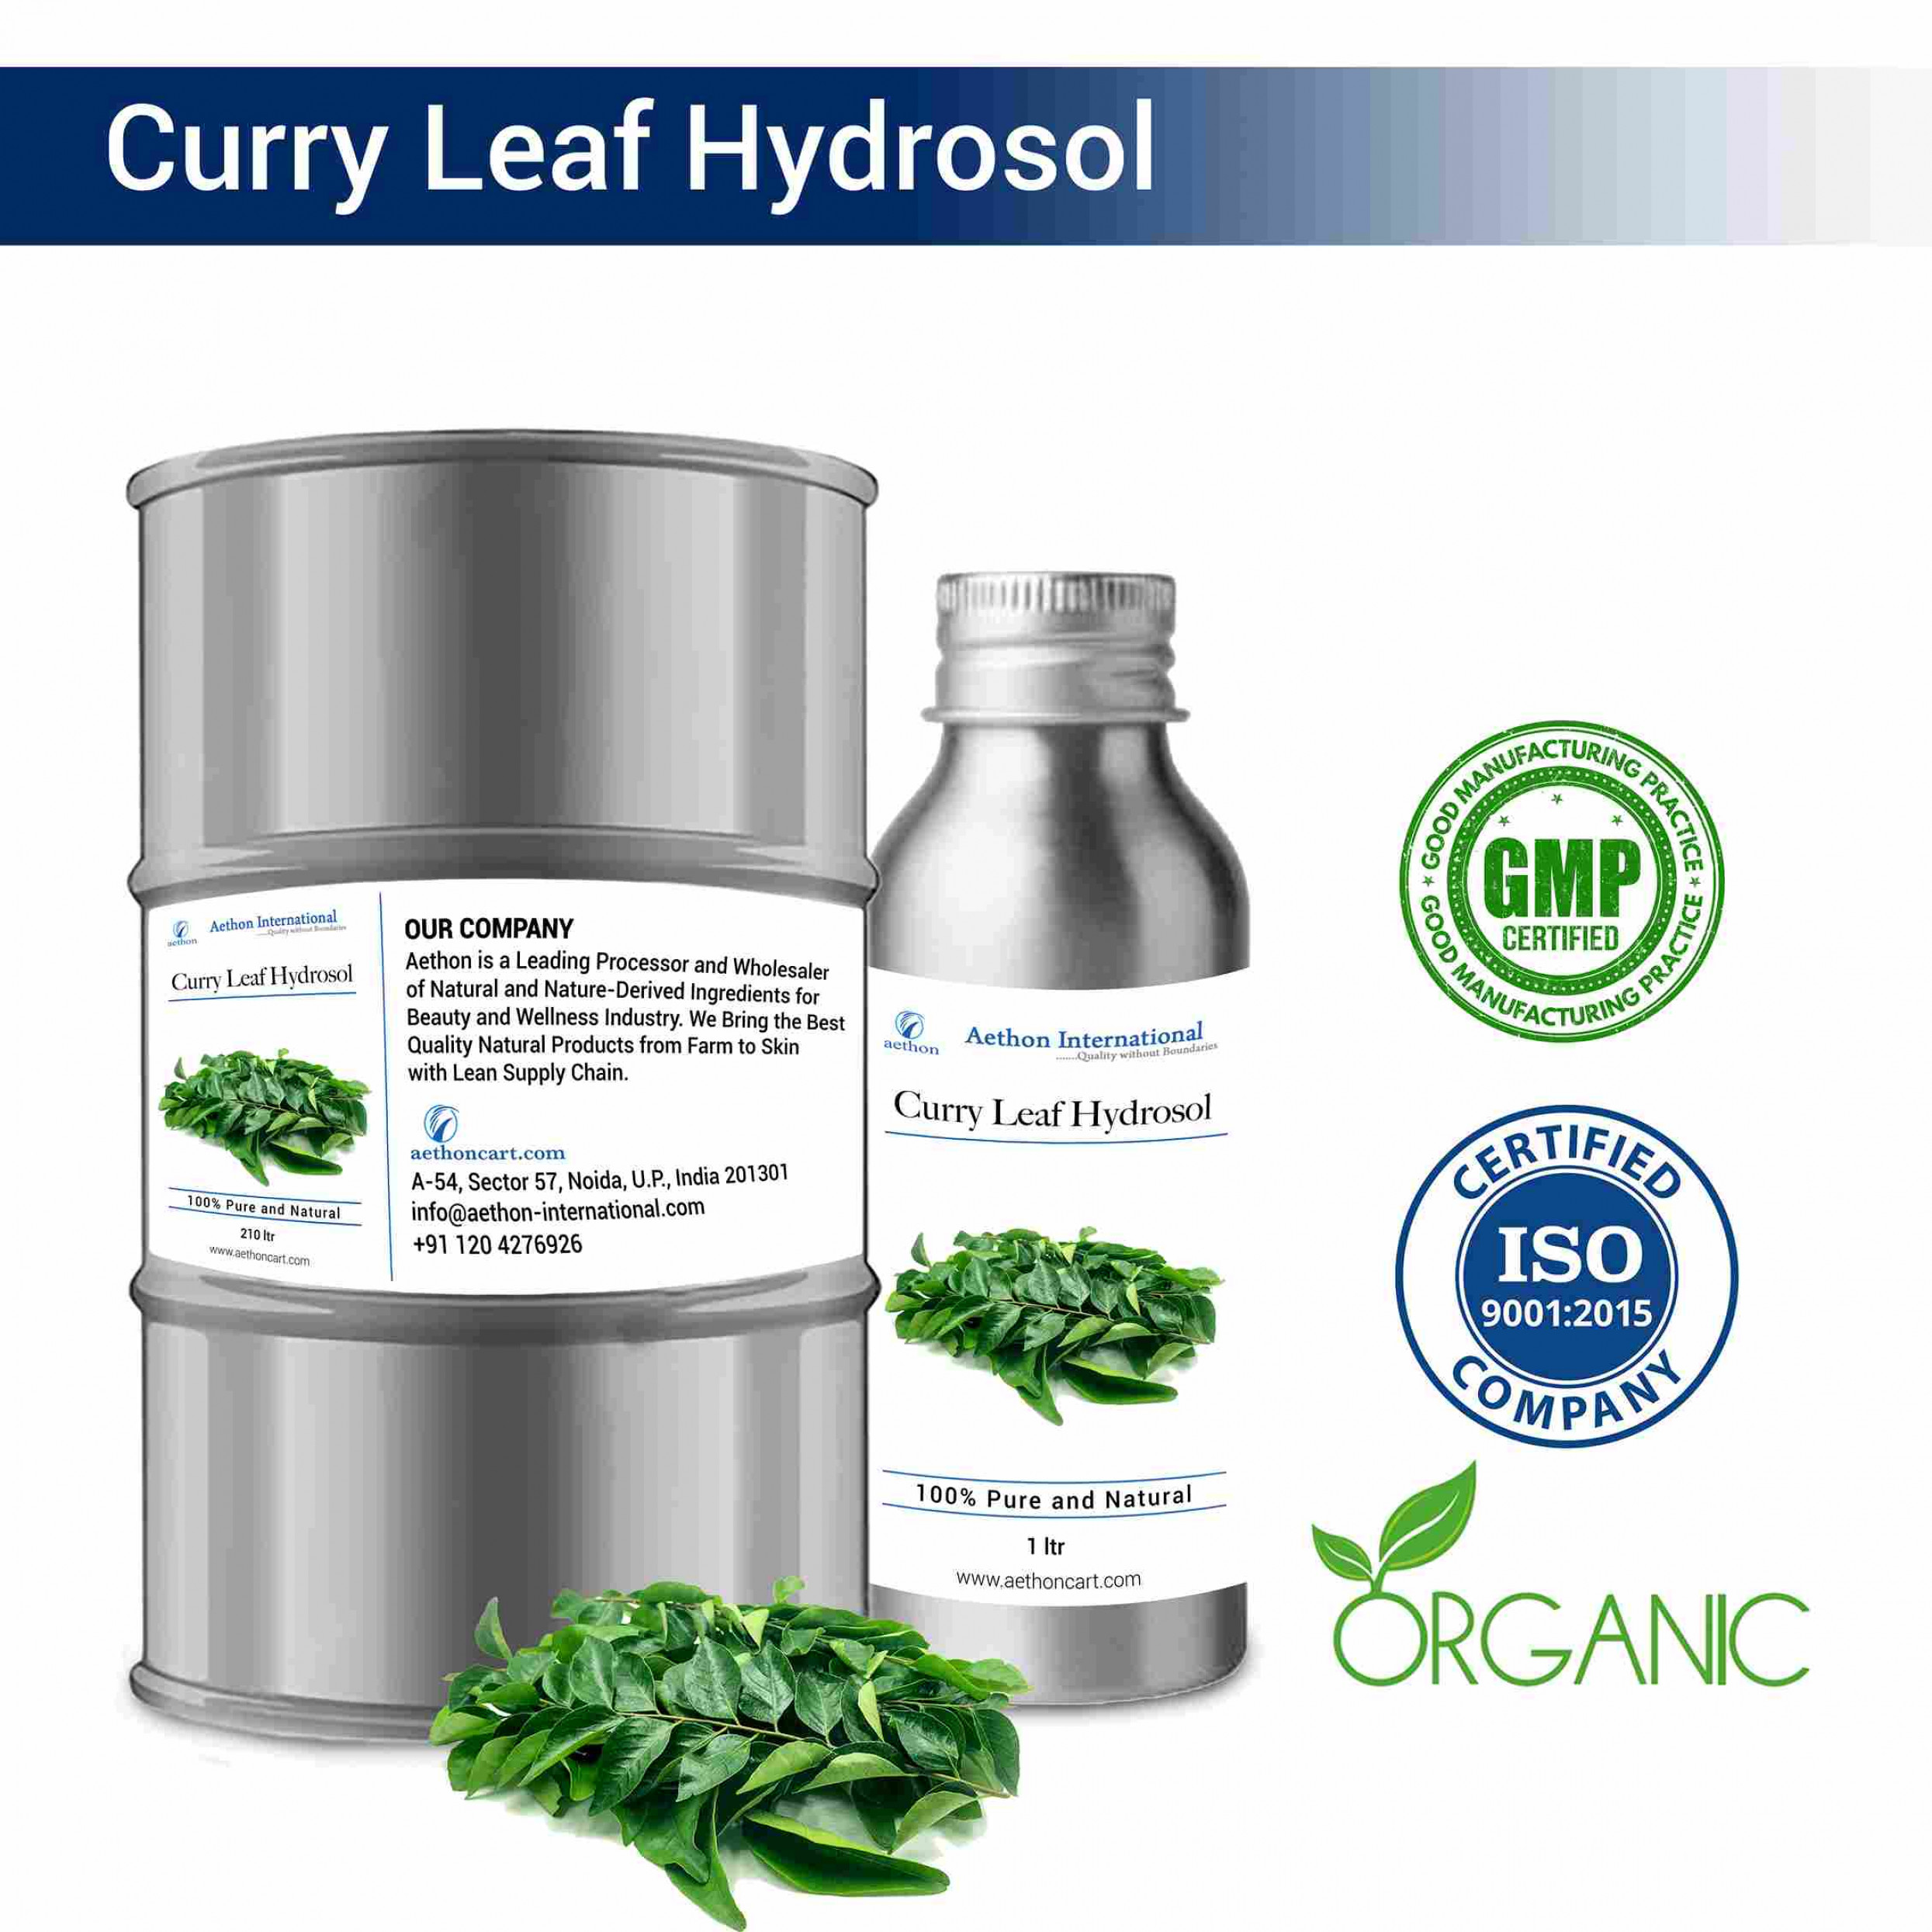 Curry Leaf Hydrosol